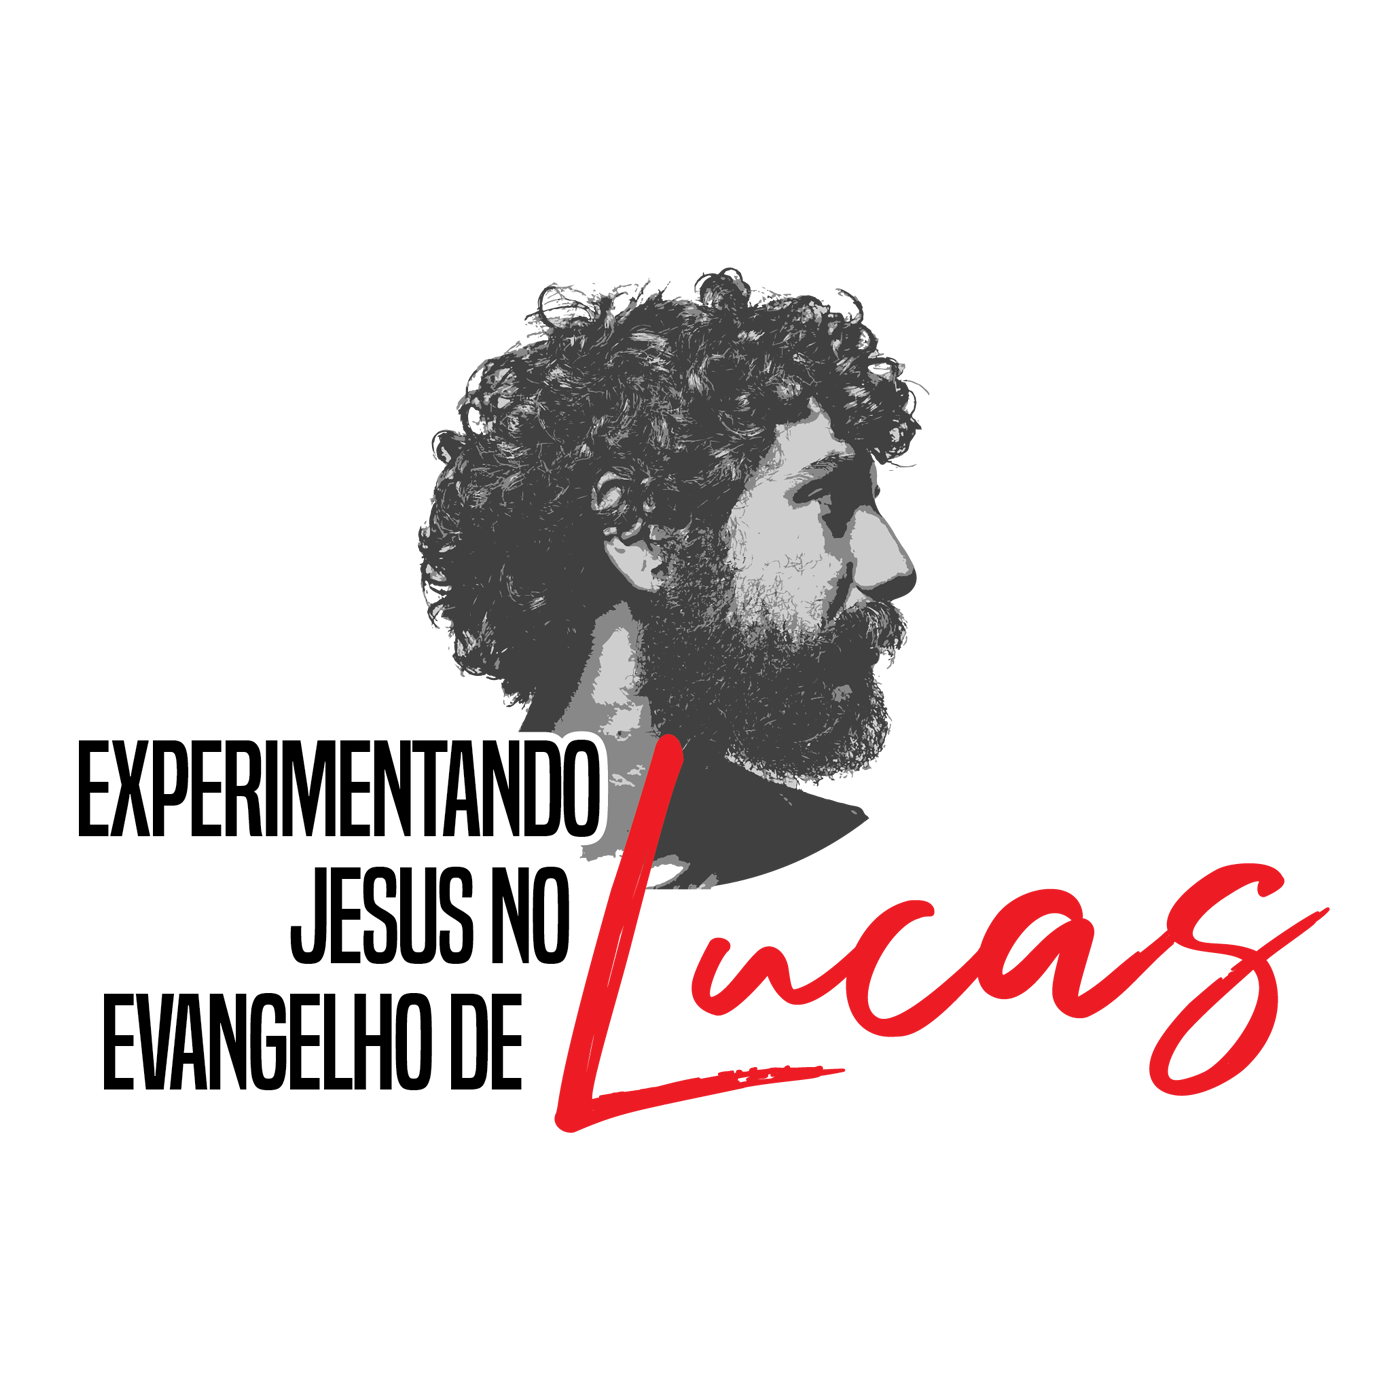 Lucas 7:24-28